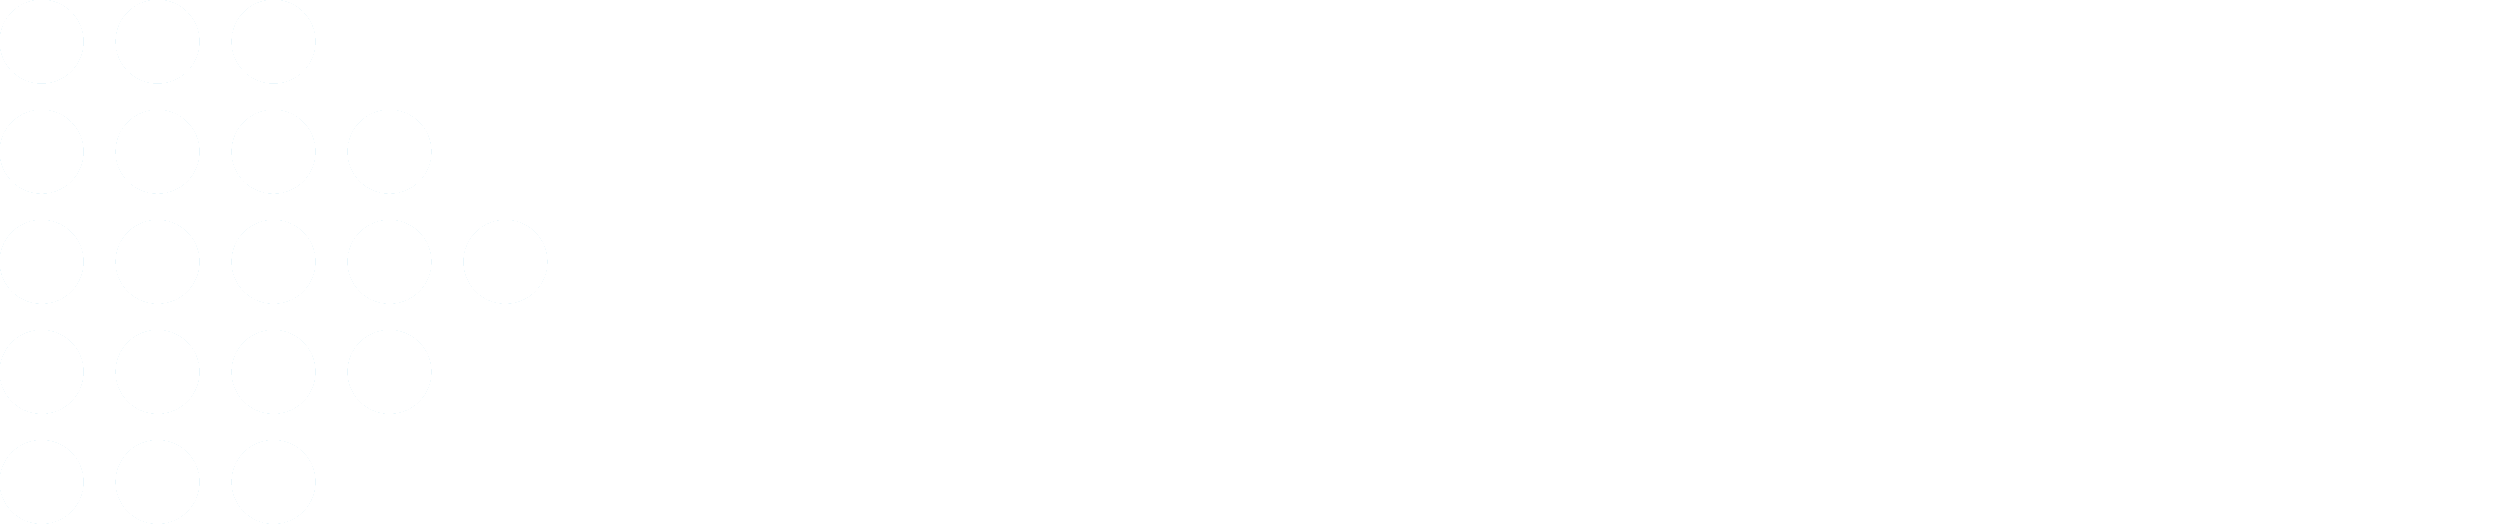 datamill